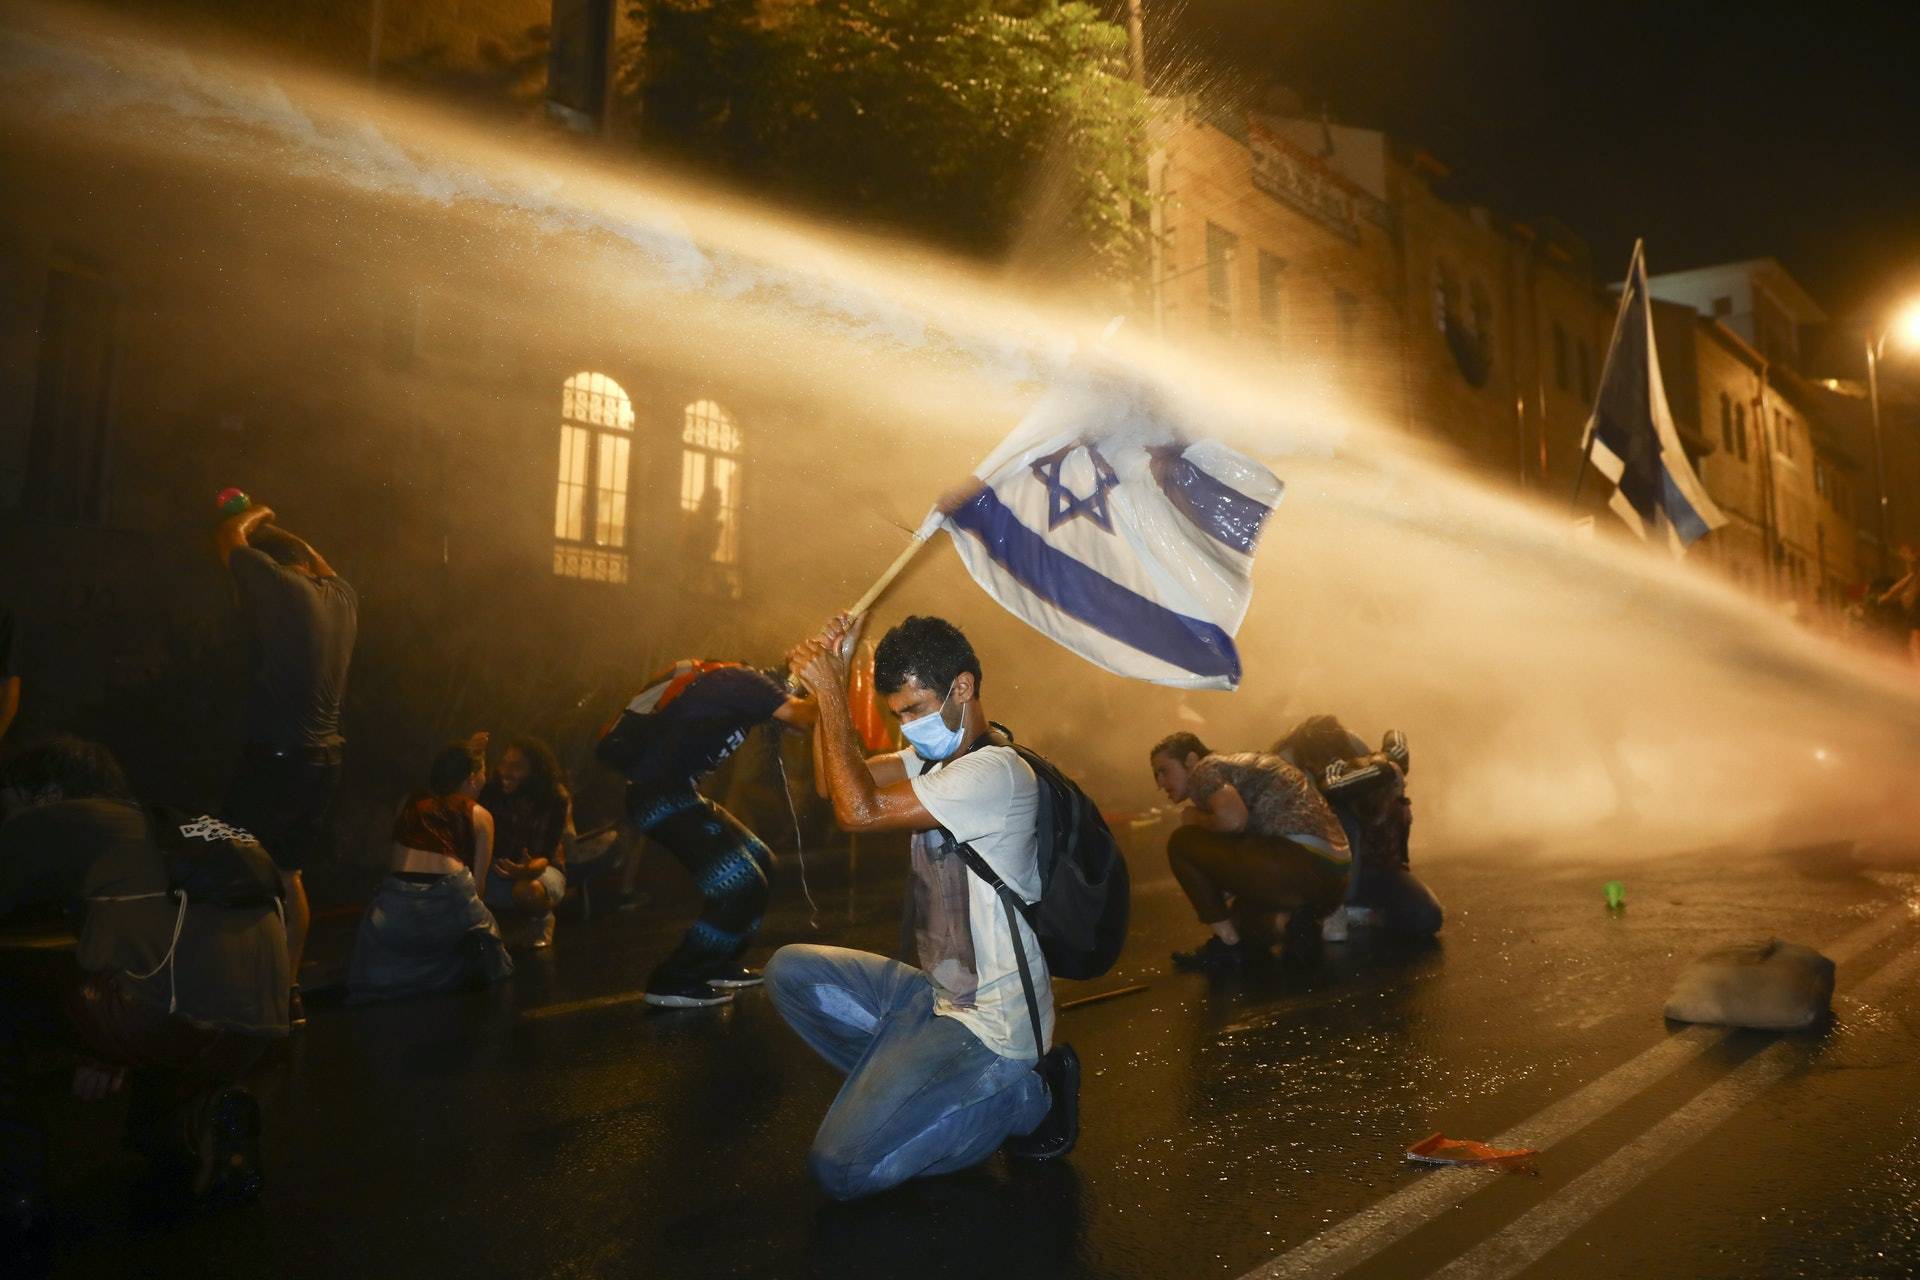 防疫不力 以色列數城爆發示威要總理下台 - 新聞 - Rti 中央廣播電臺